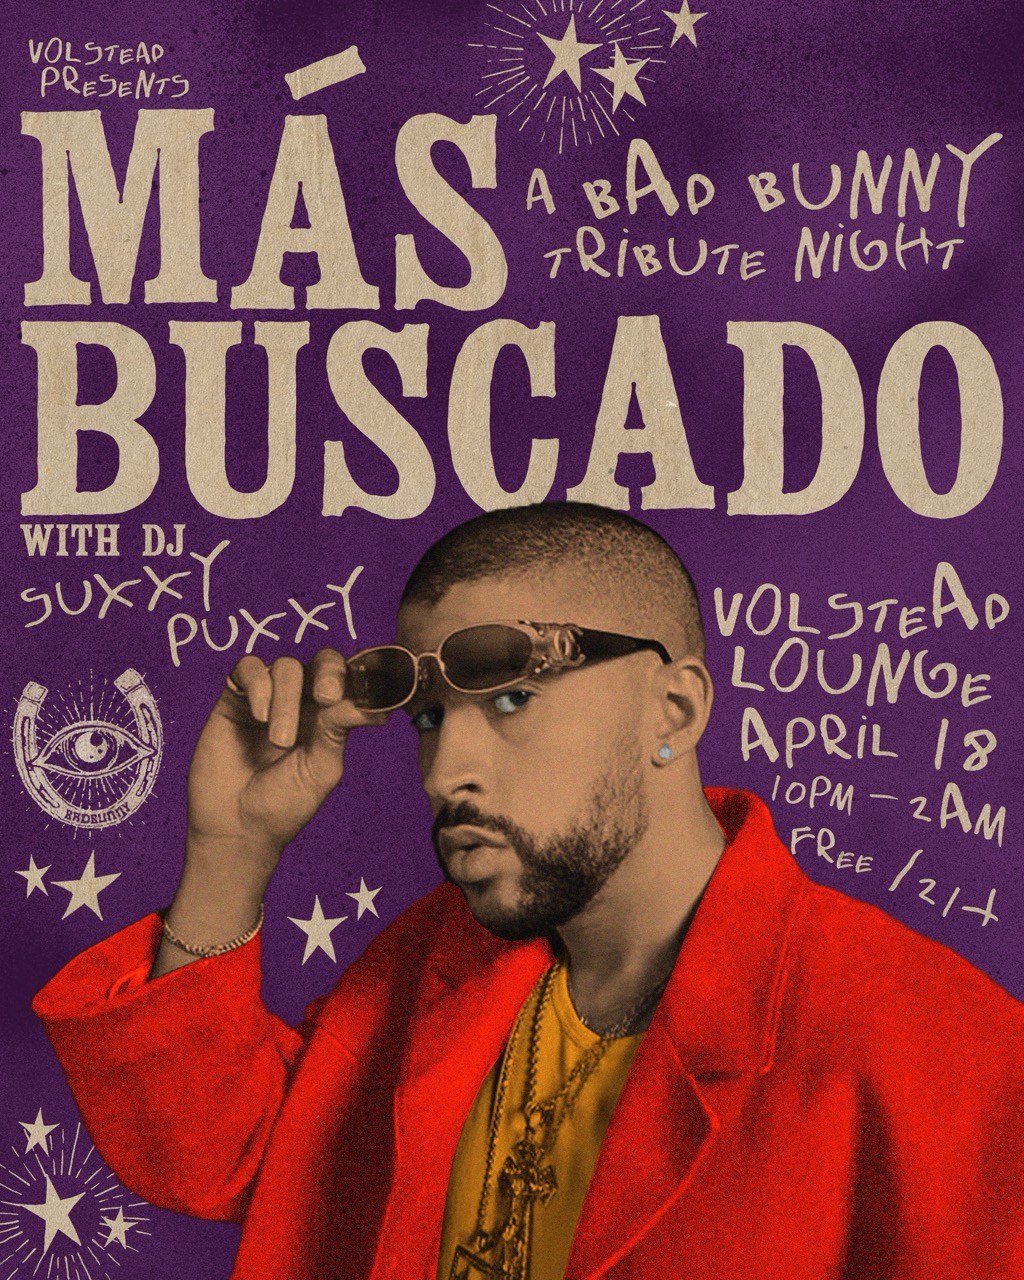 MÁS BUSCADO: A Bad Bunny Tribute Night with Suxxy Puxxy @ Volstead Lounge